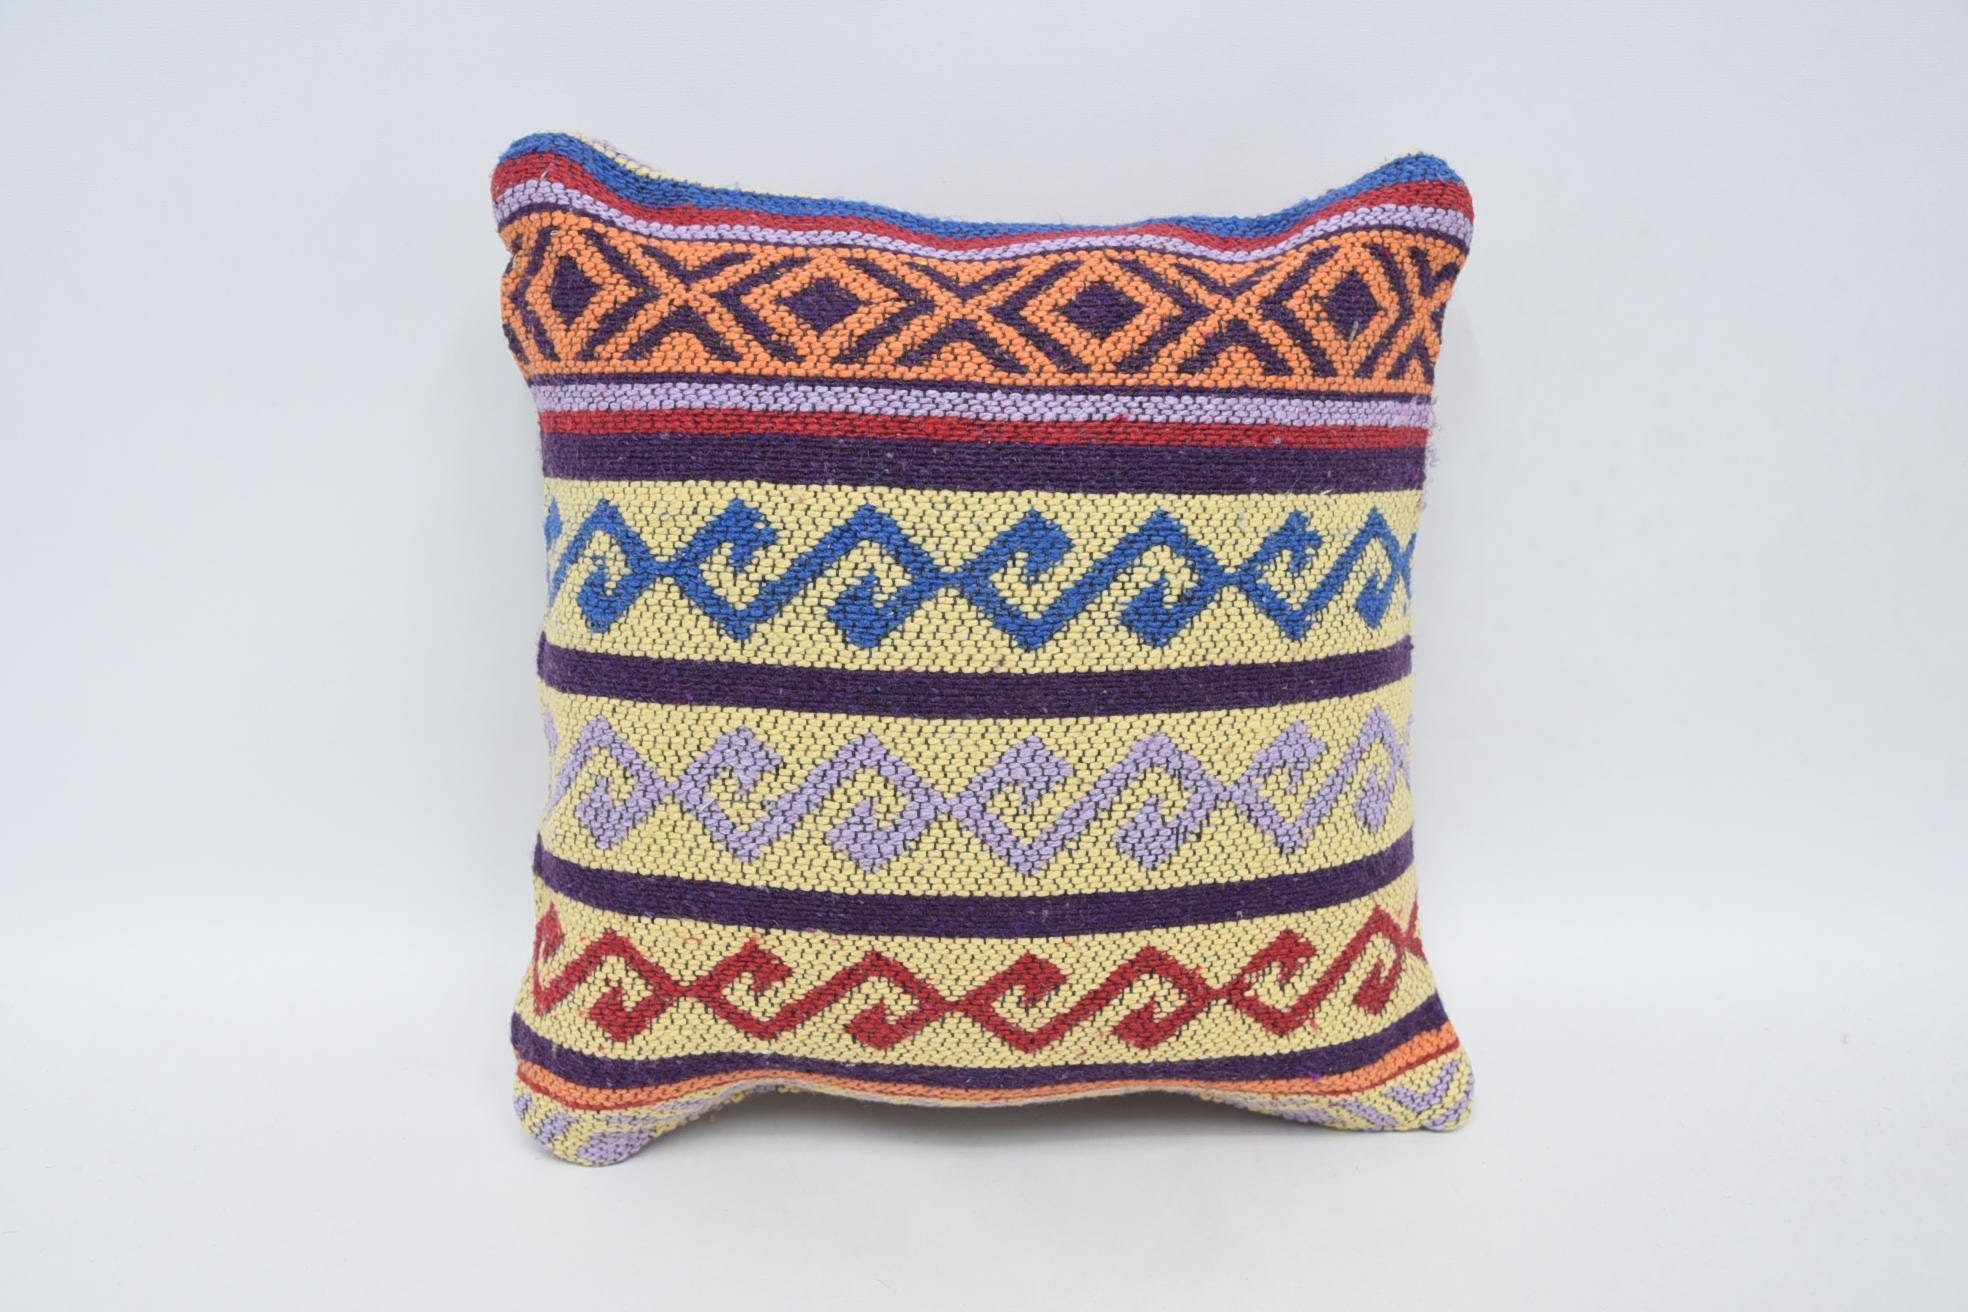 Handmade Kilim Cushion, Home Decor Pillow, Tapestry Pillow, Bohemian Cushion Pillow, Kilim Cushion Sham, 12"x12" Yellow Cushion Cover